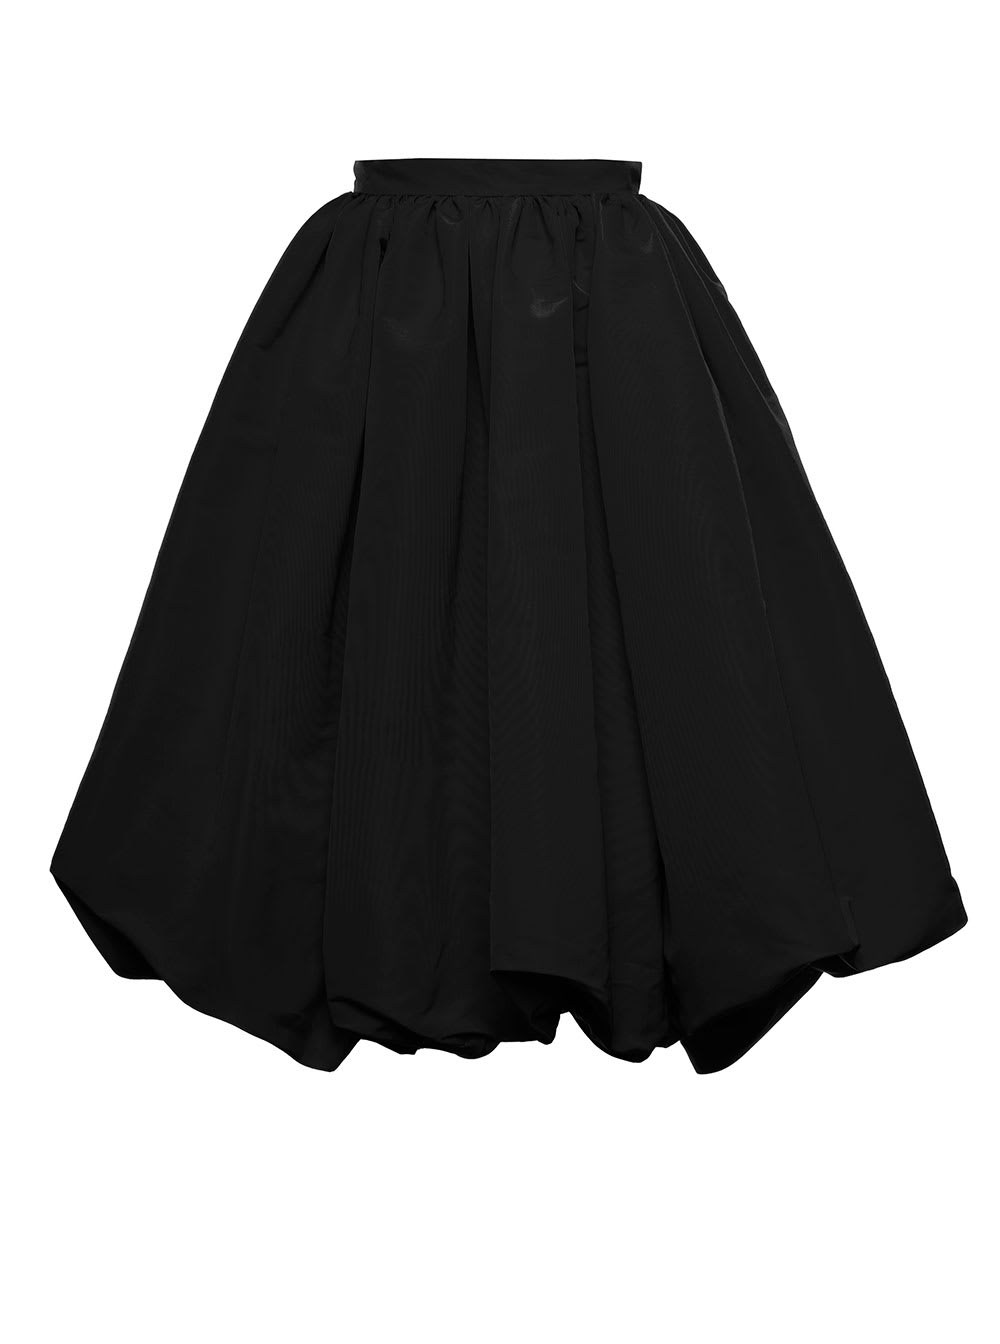 Alexander Mcqueen Womans Black Flared Polyfaille Skirt